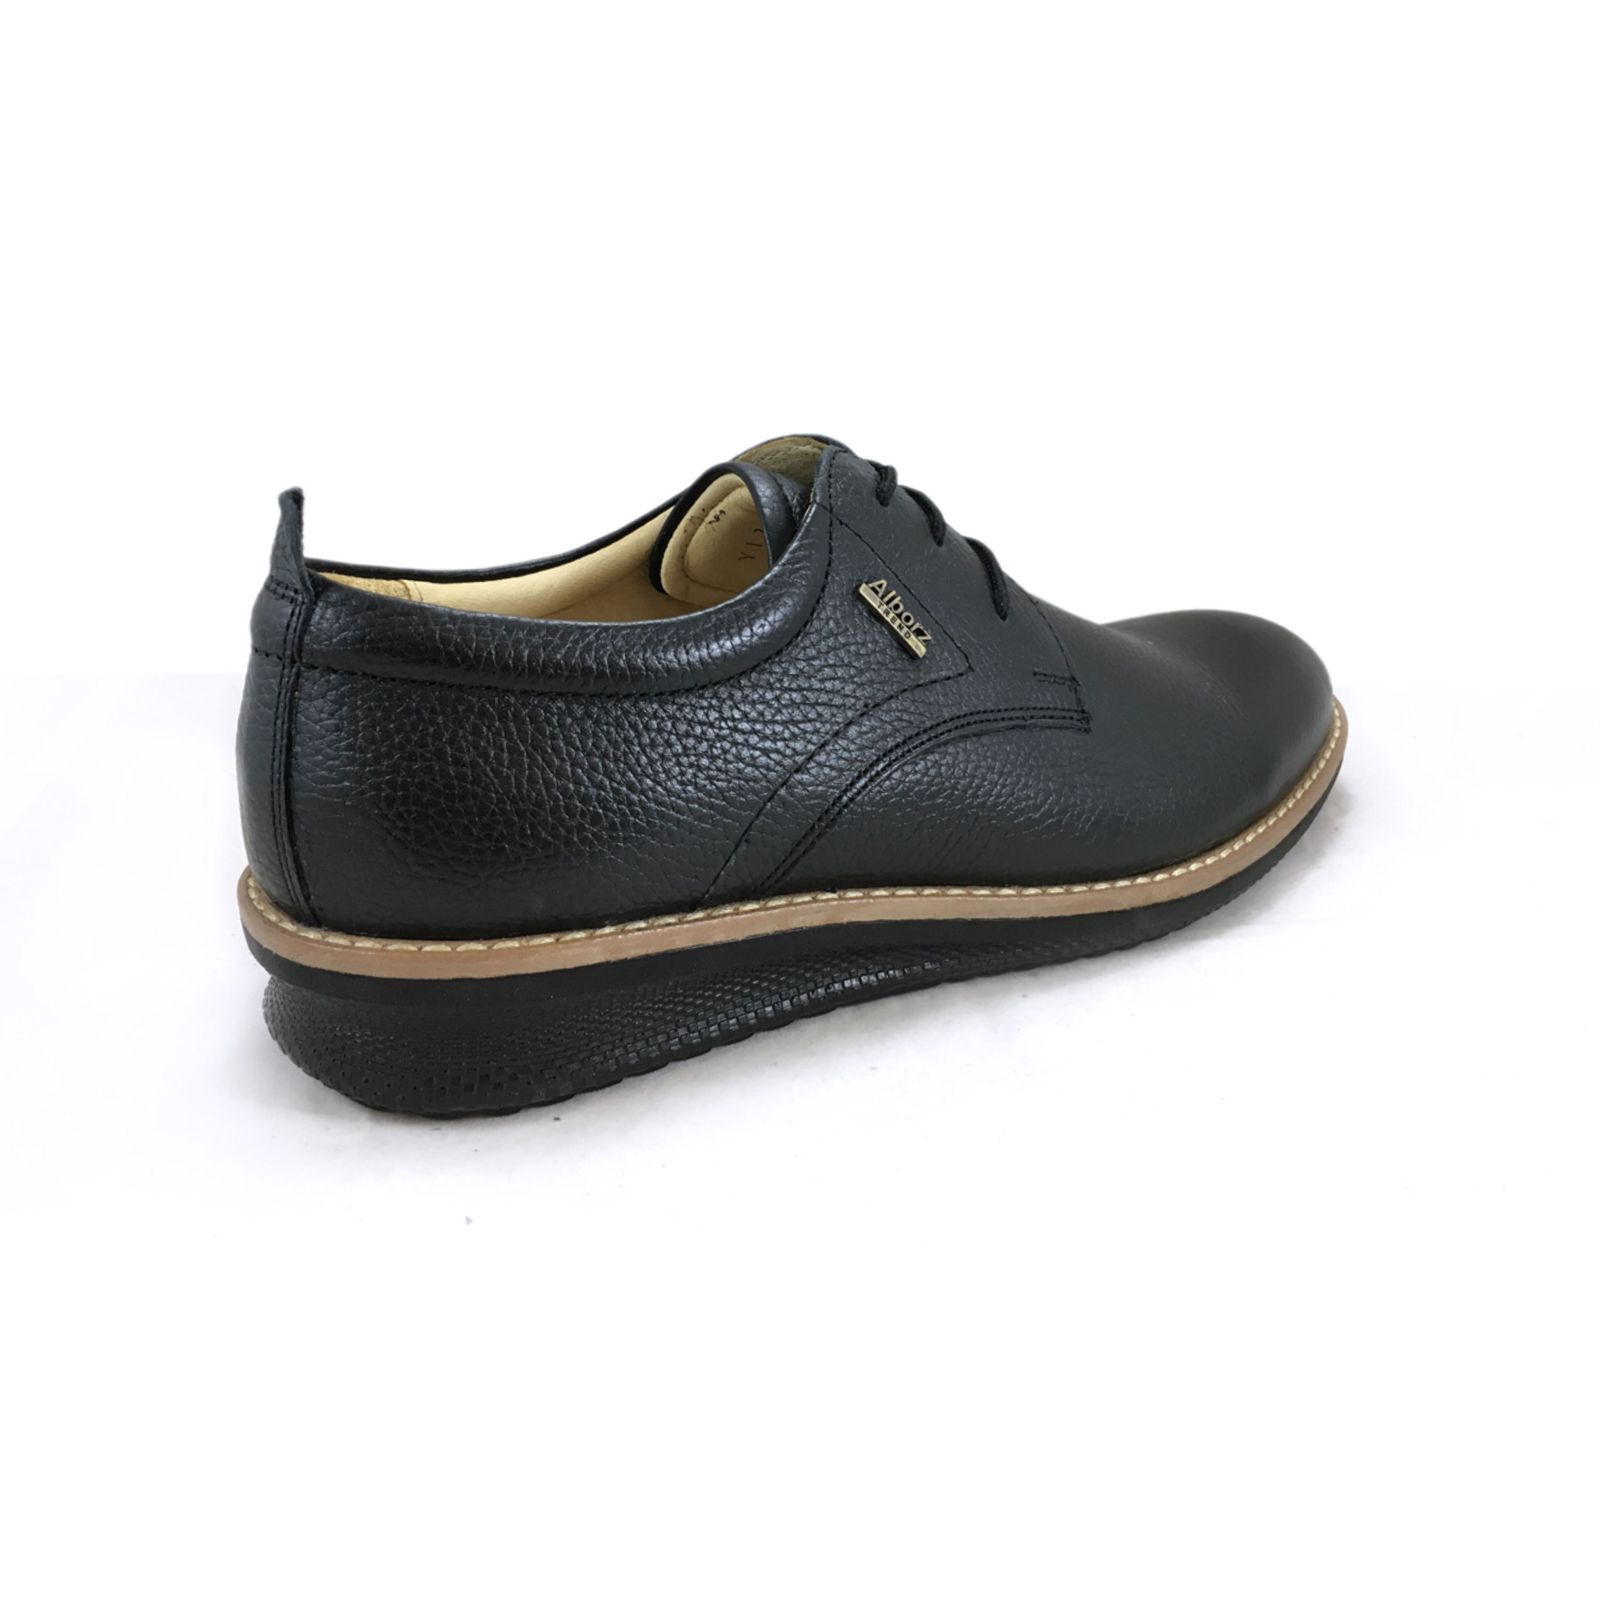 کفش روزمره مردانه شرکت کفش البرز مدل HMN کد 2924-3 -  - 13